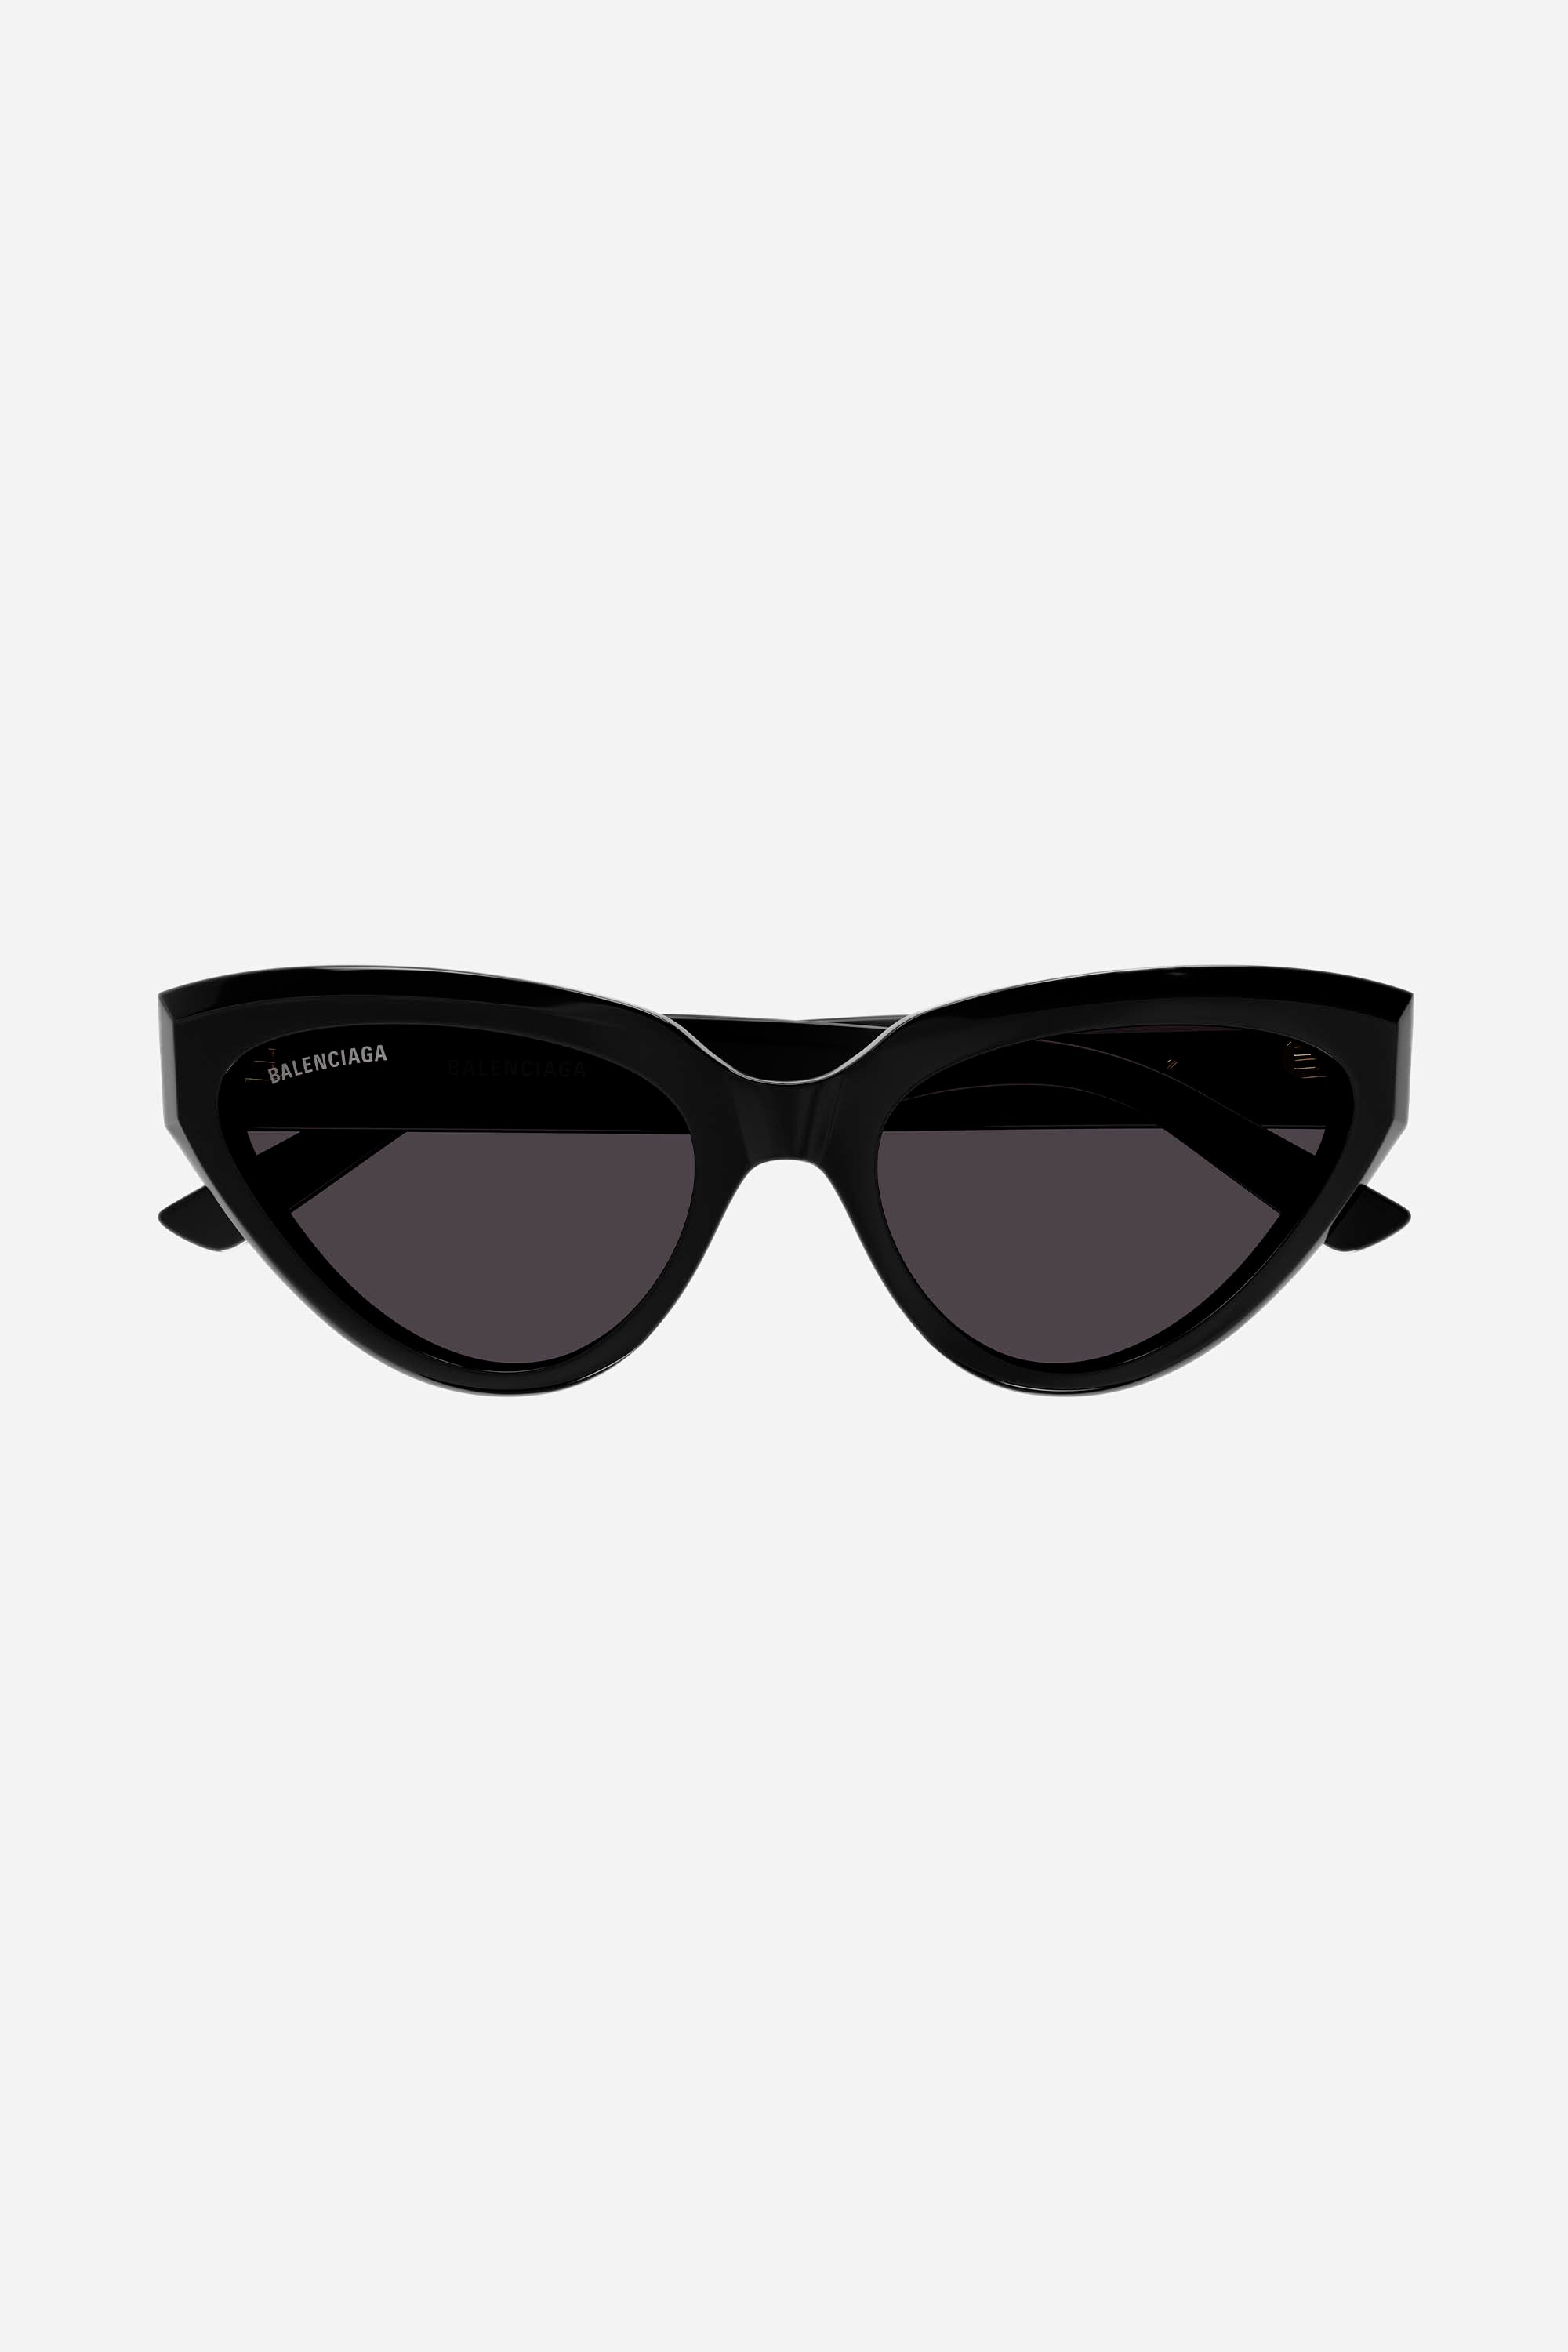 Balenciaga black cat-eye sunglasses with BB logo - Eyewear Club